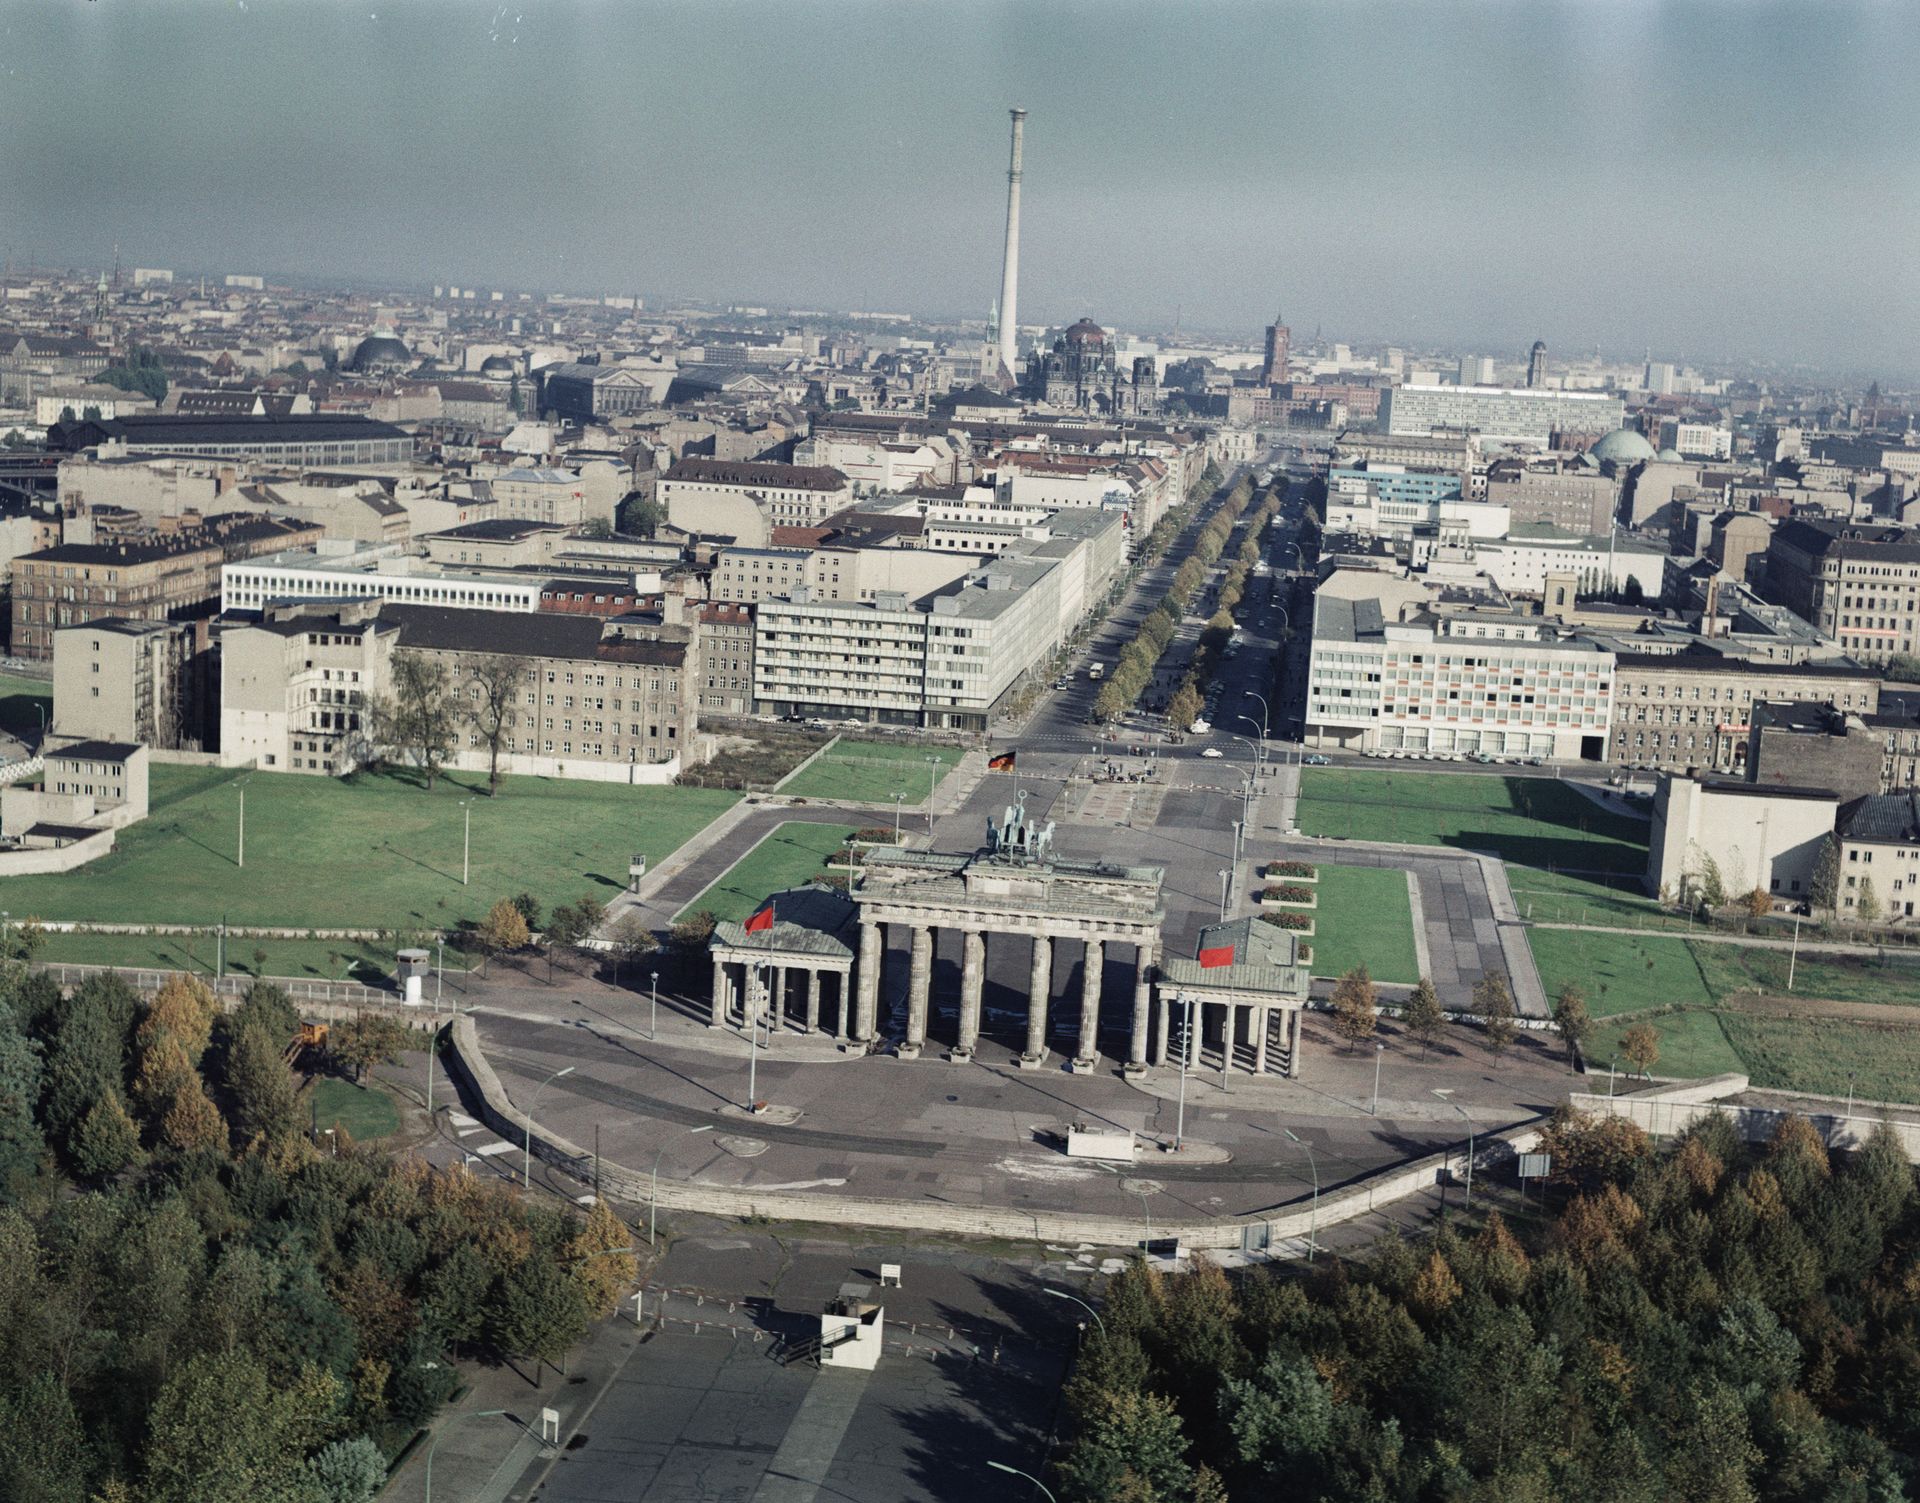 Otto Borutta, Luftaufnahme, Blick von Westen auf das Brandenburger Tor mit Unter den Linden, 1967-68